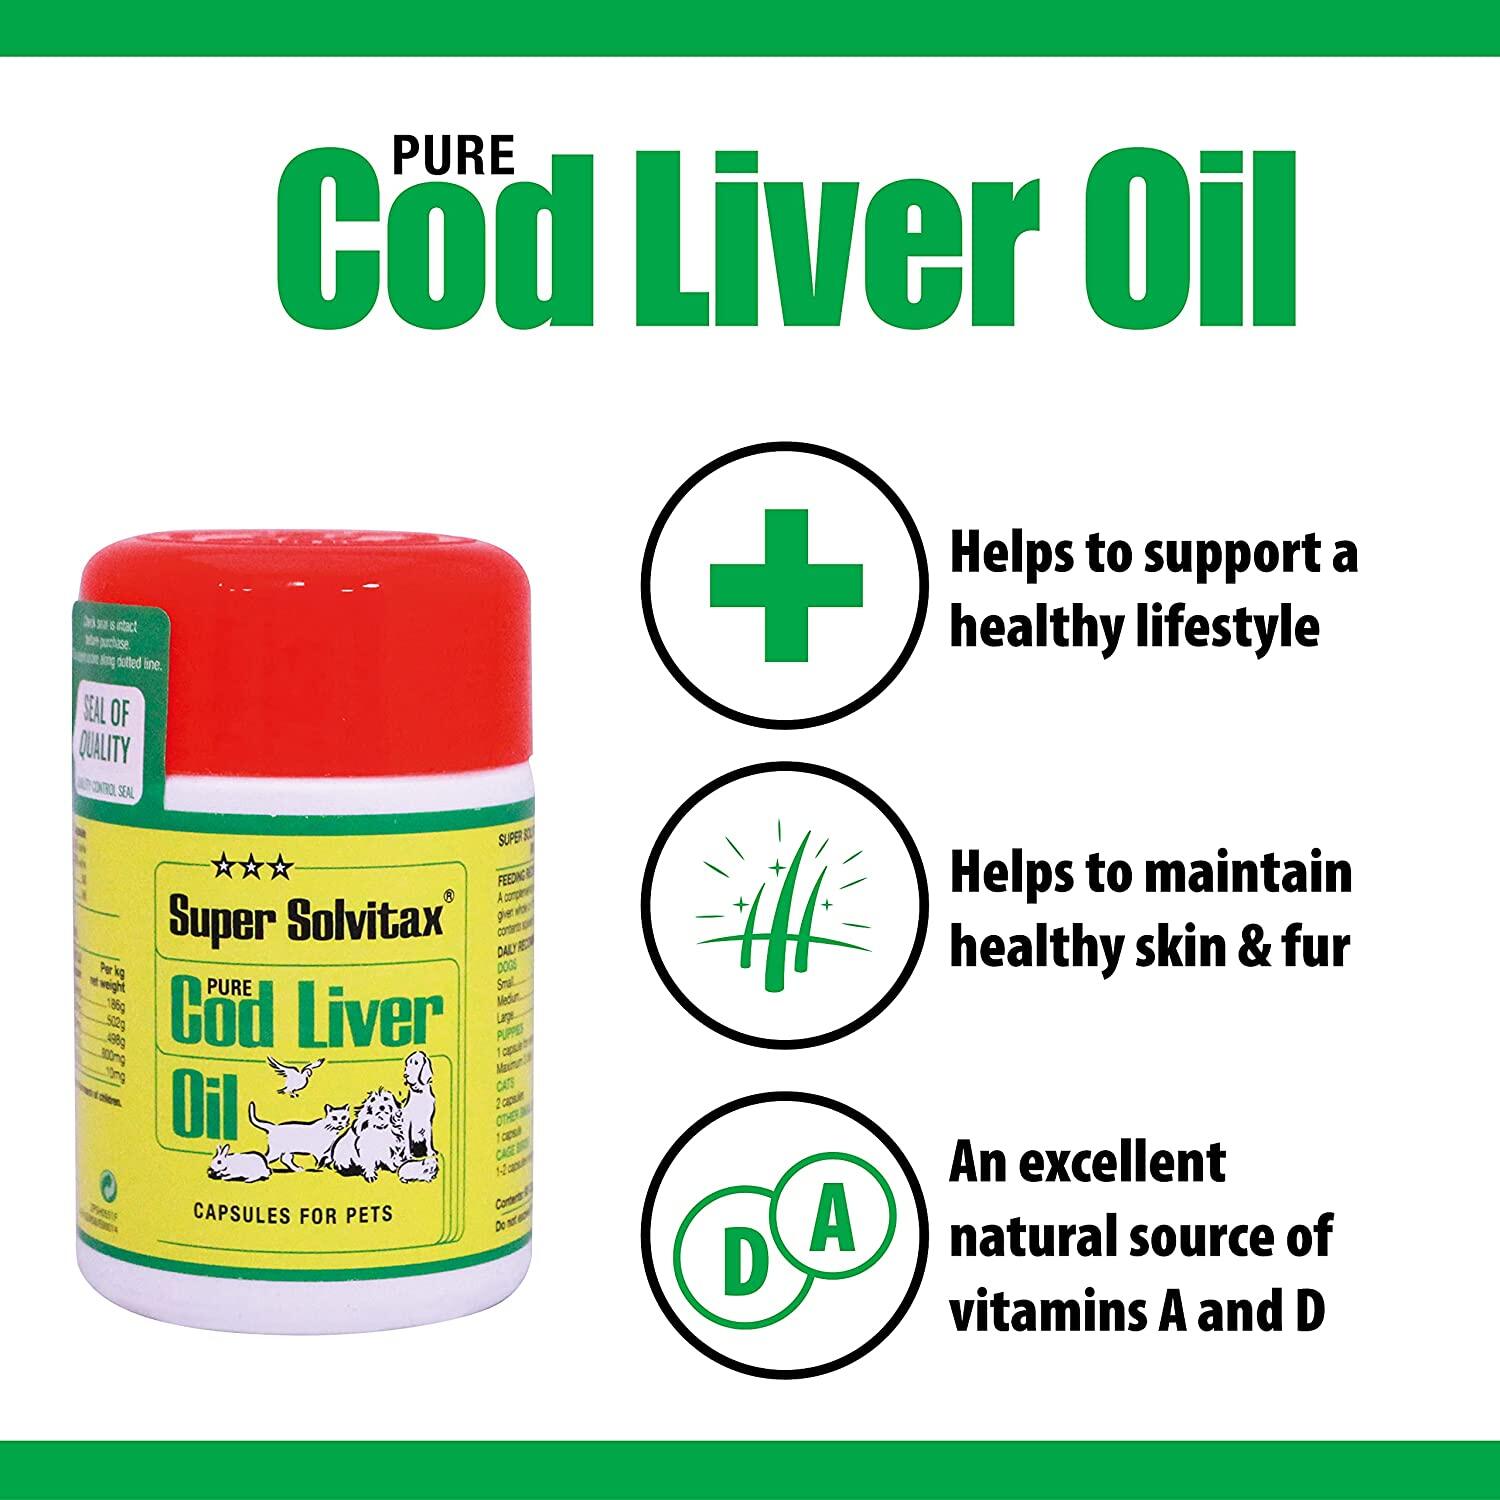 Super Solvitax Pure Cod Liver Oil Capsules for Pets 90 Capsules minyak ikan kod hair & skin bulu cantik